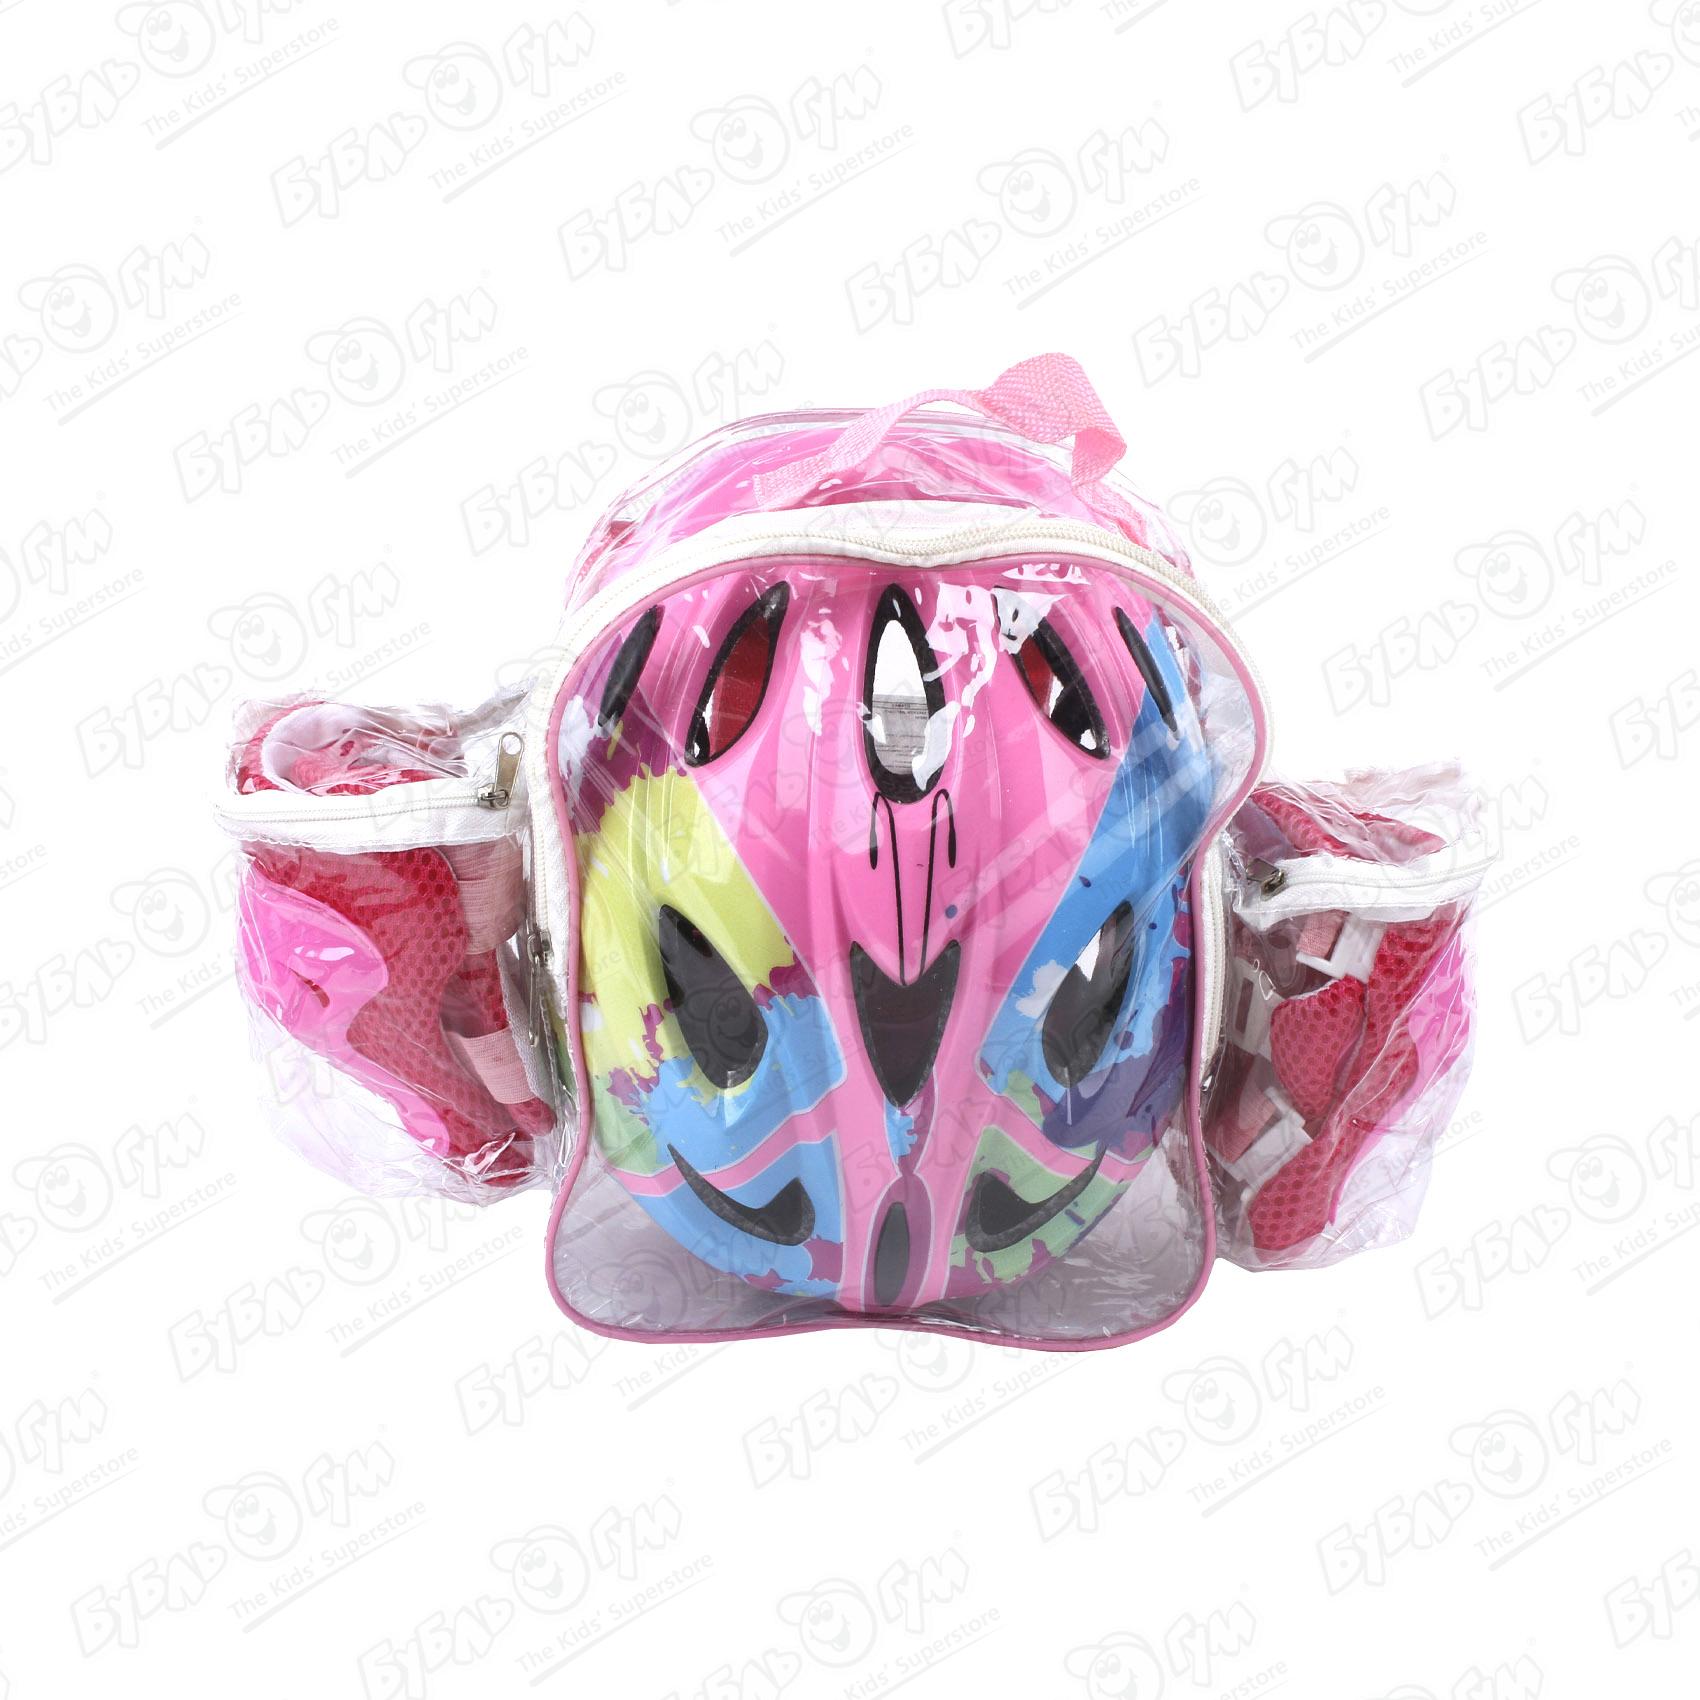 Комплект защиты ROLLO PRO наколенники защита для рук и шлем в рюкзаке розовый 51-54см комплект защиты компания друзей налокотники наколенники полуперчатки красный jb0208467